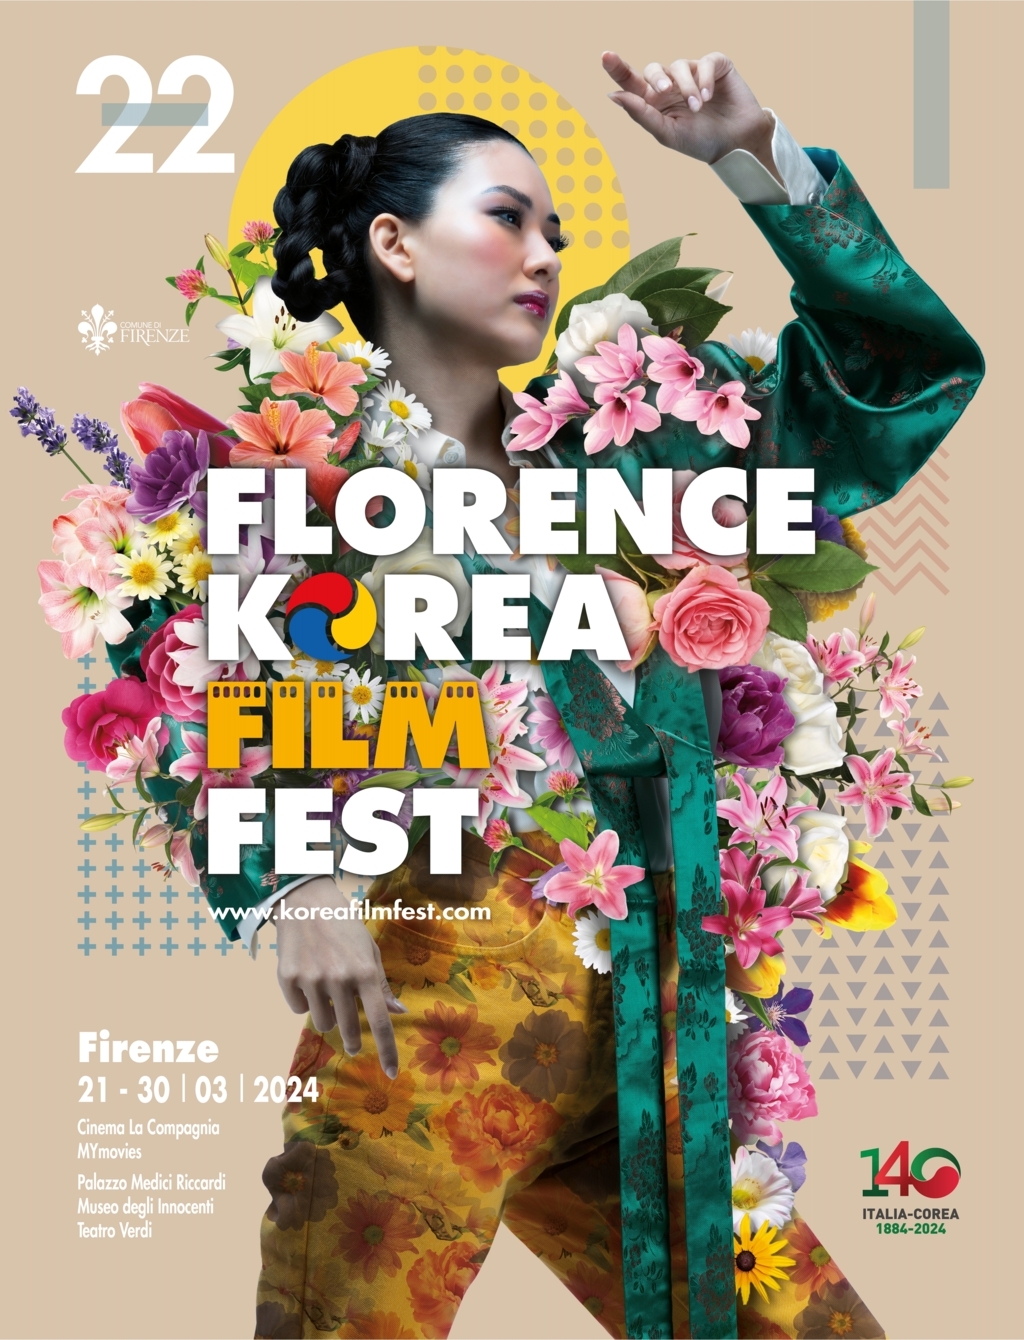 Presentata la 22a edizione del Florence Korea Film Festival